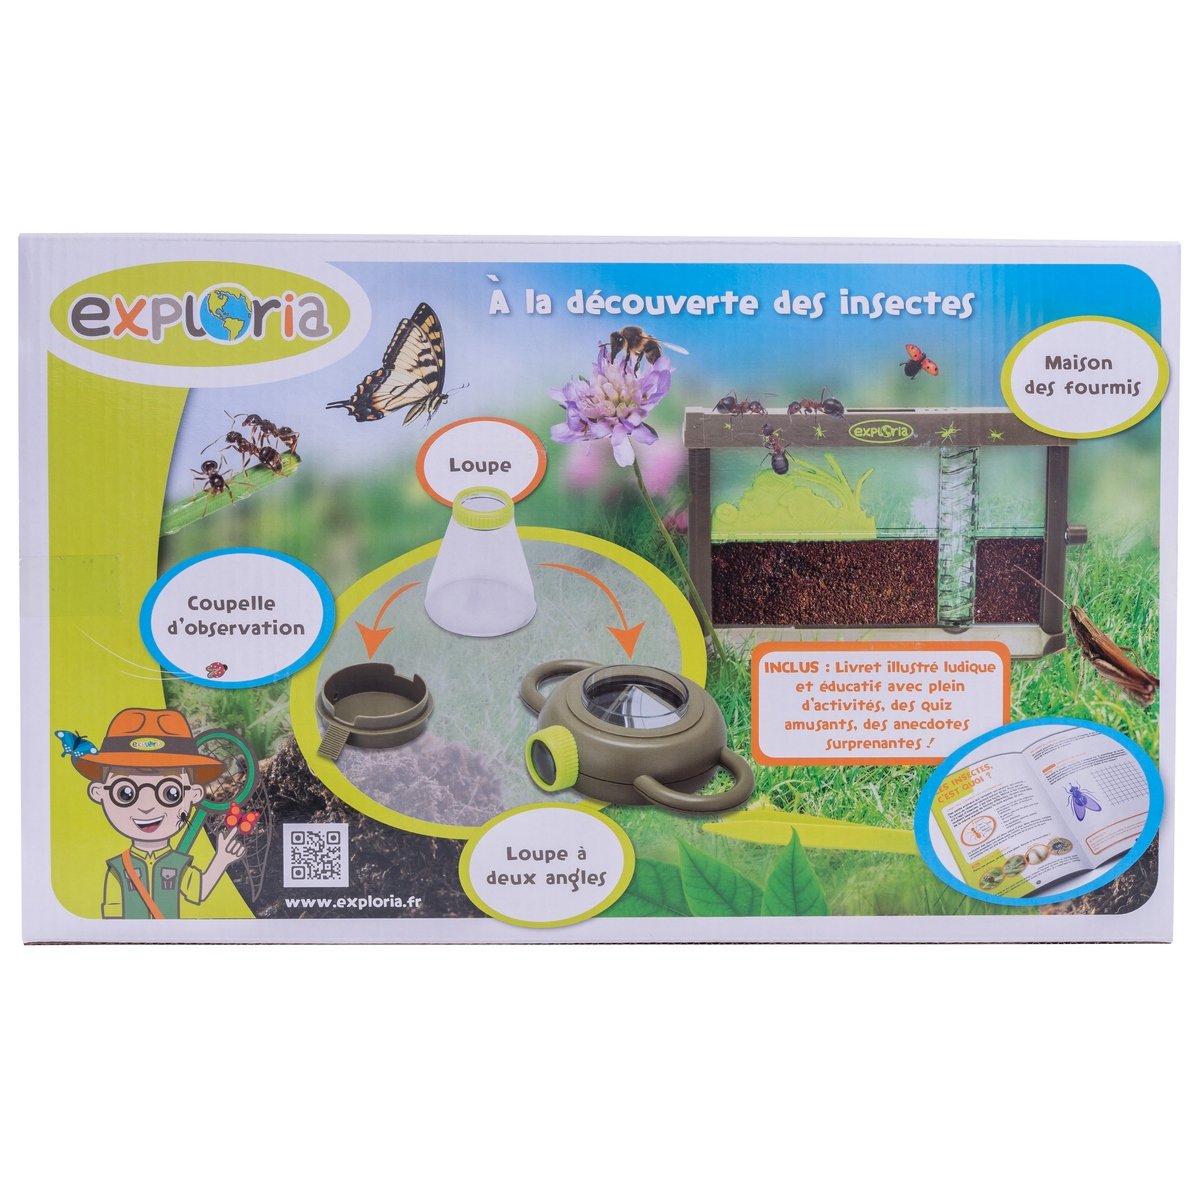 Explorateur D'Insectes Buki - Jardinage créatif enfant